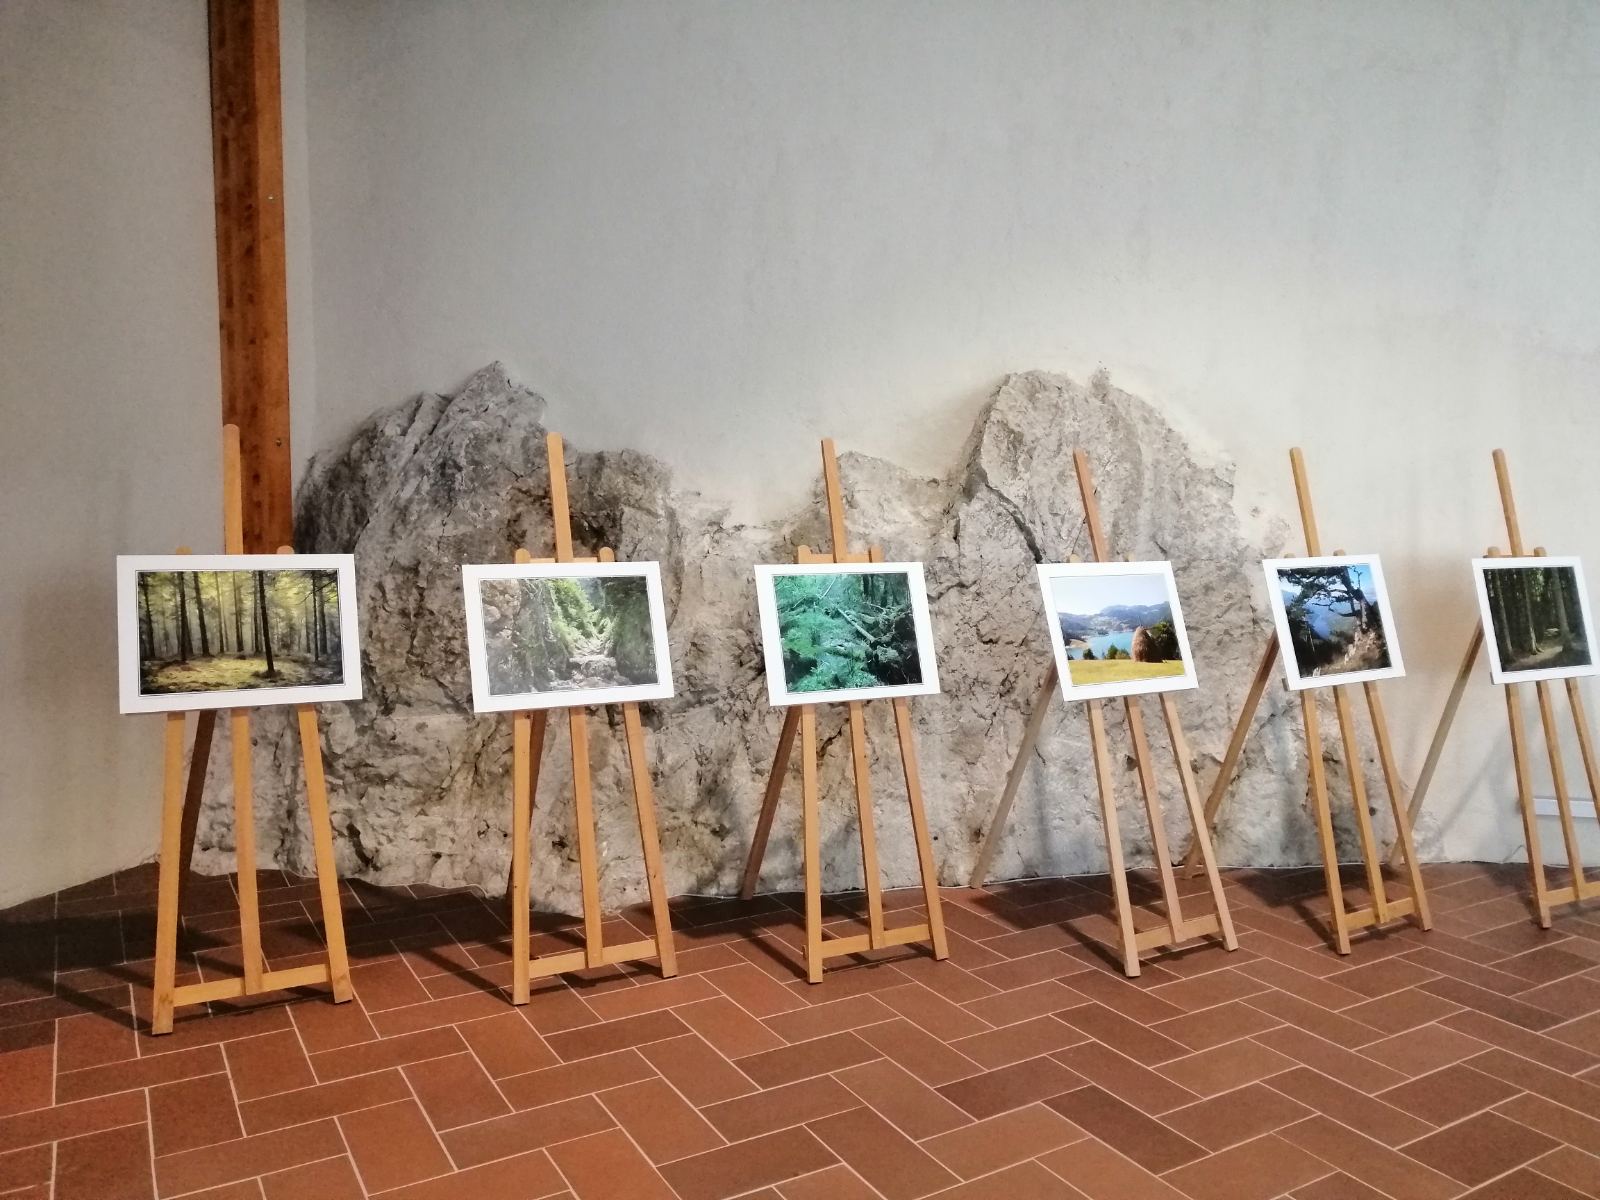 Лепоте Националног парка Тара на изложби фотографија у палати Тврђаве Голубачки град